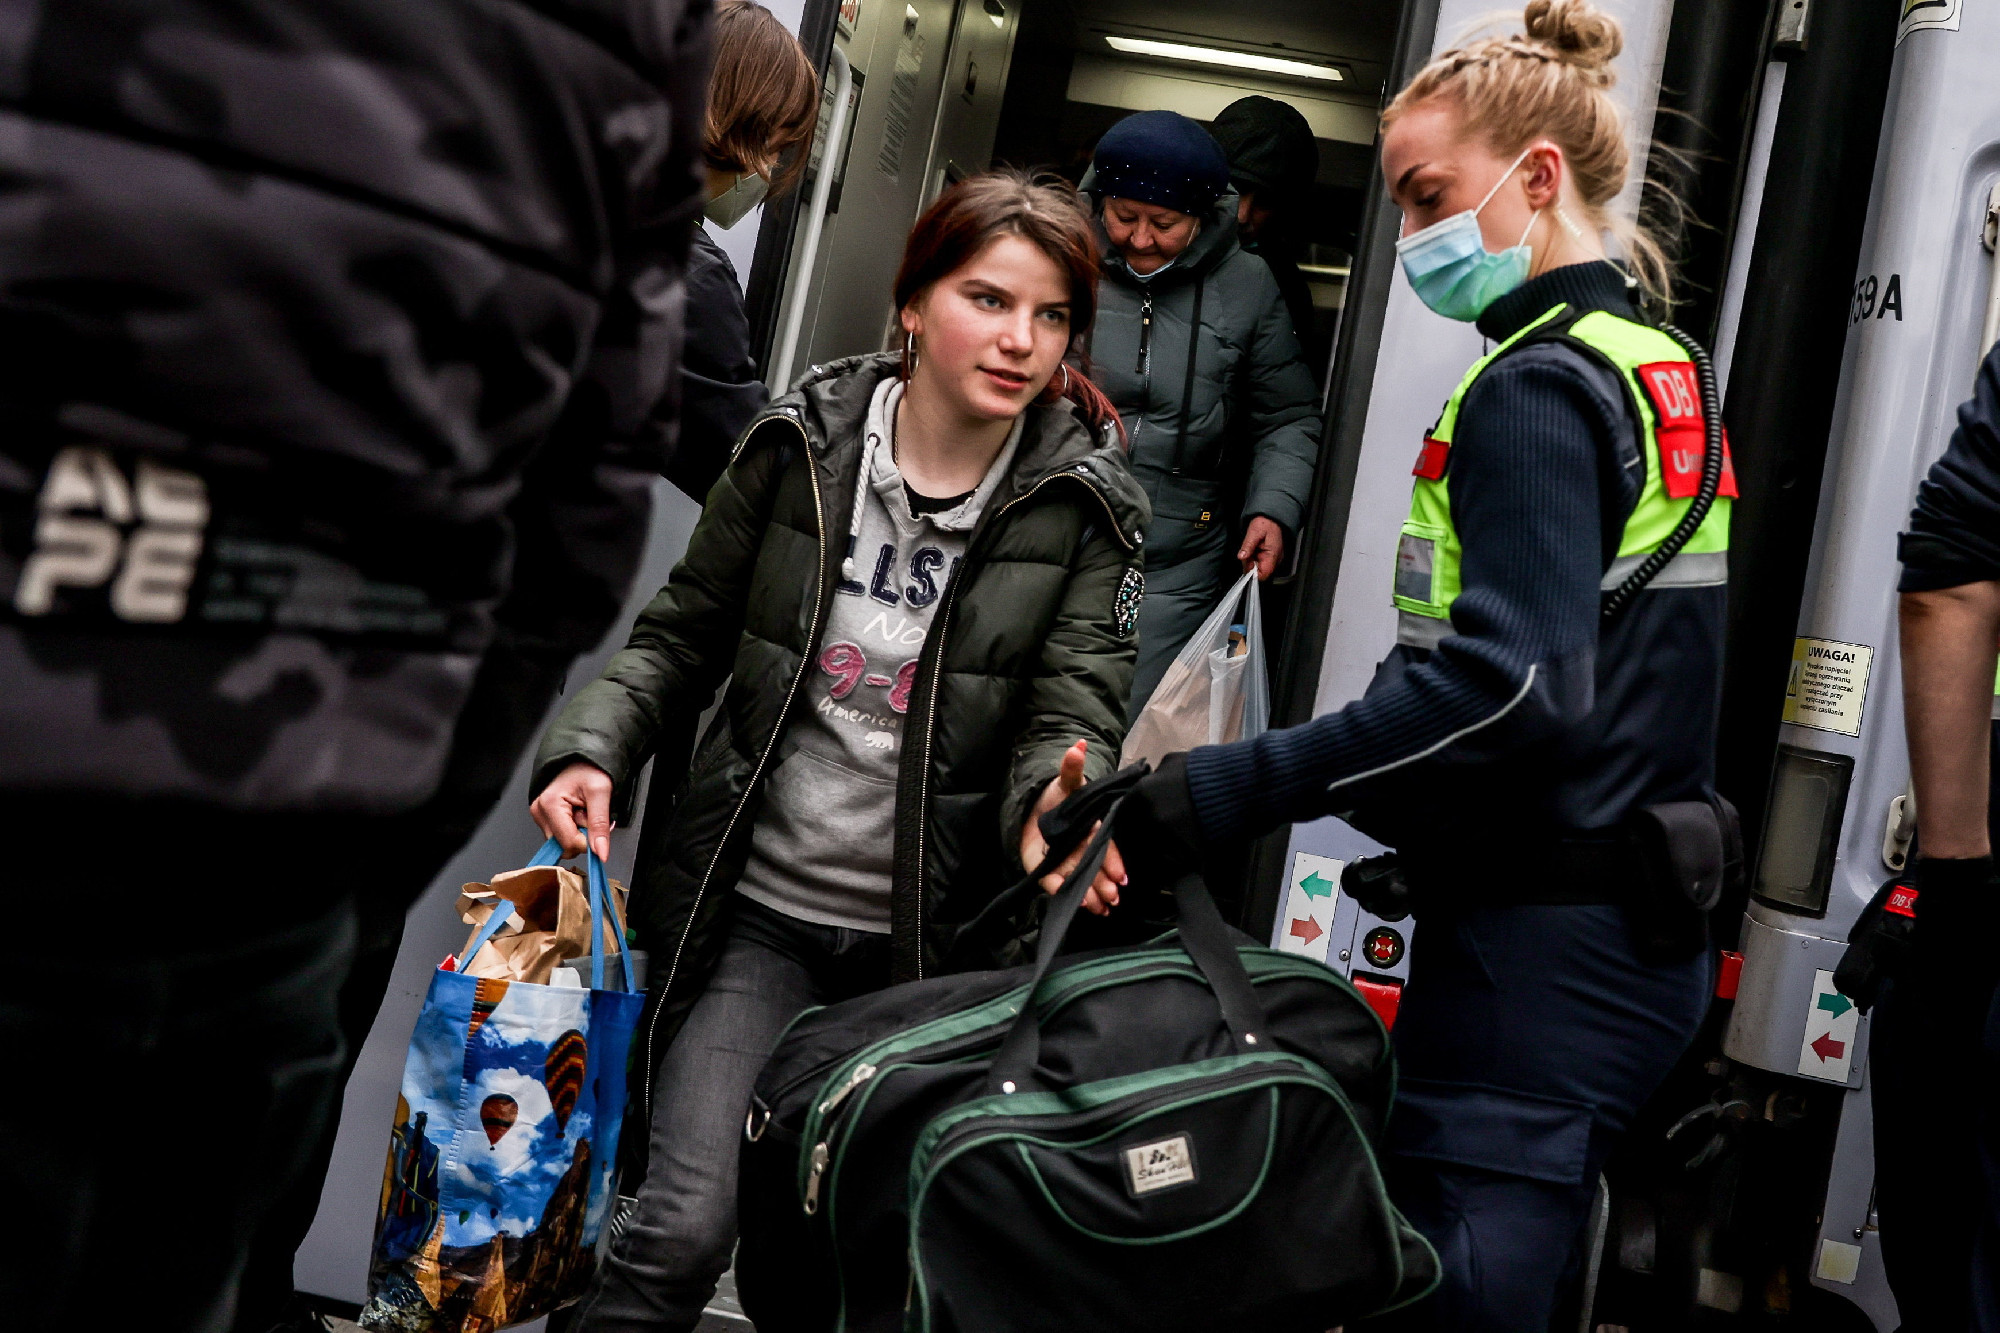 A Németországba menekült ukránok harmada tartósan maradni szeretne